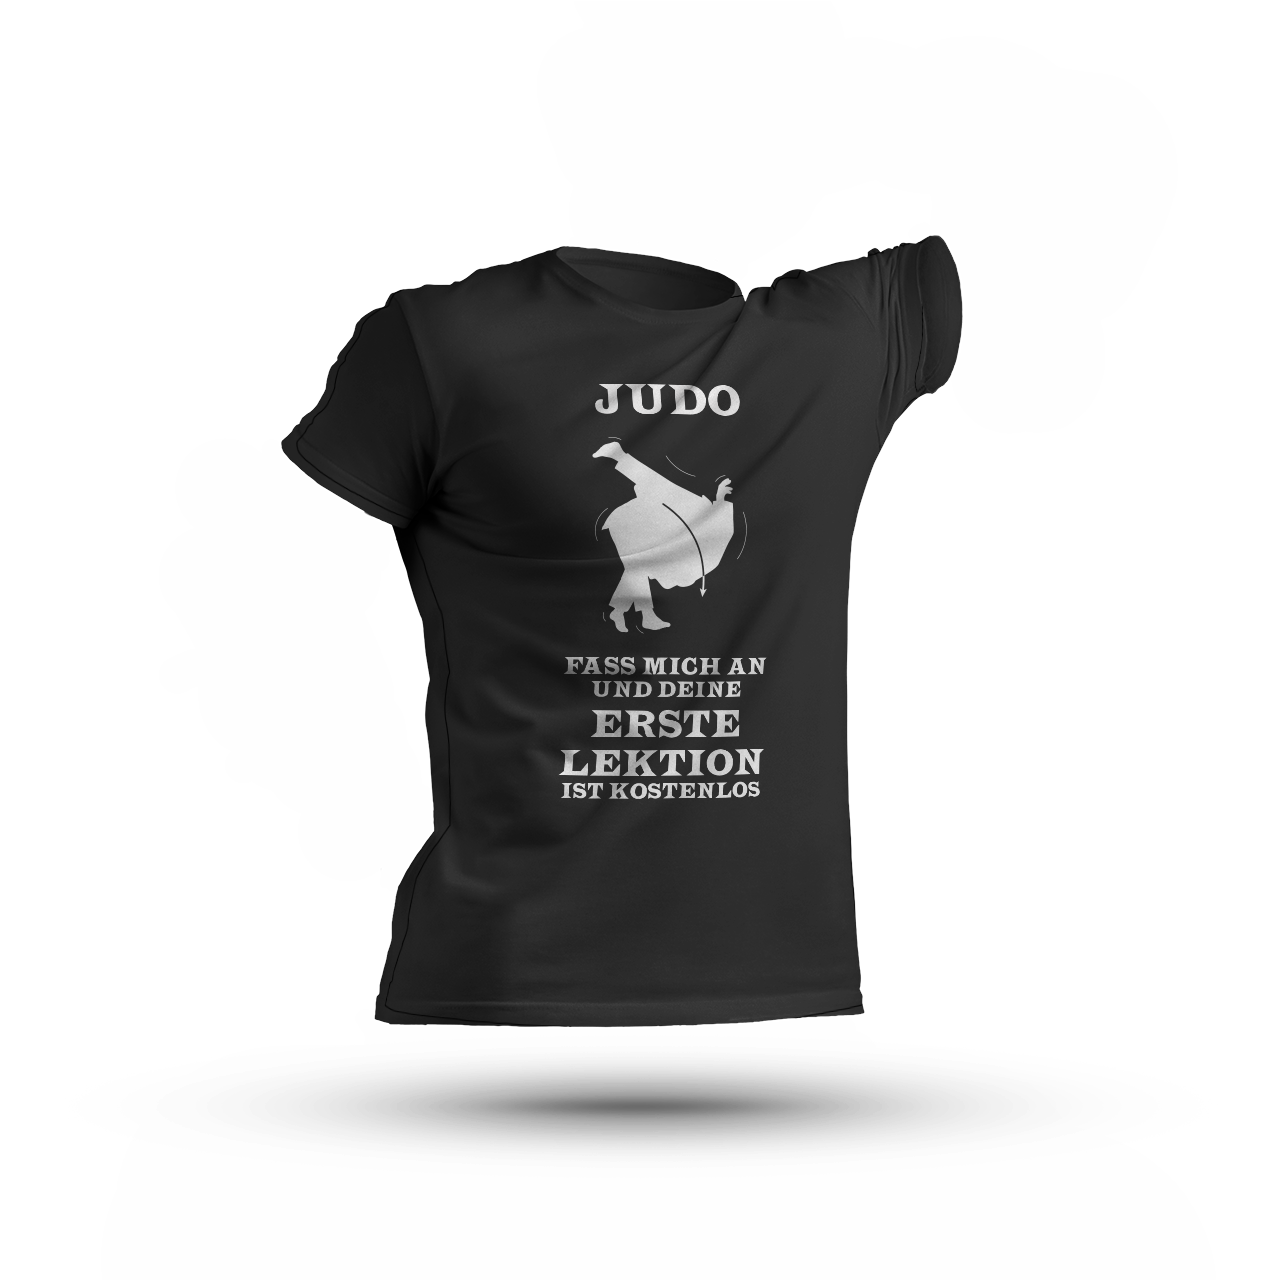 SAssist Judo T-Shirt mit Aufdruck auf der Vorderseite "Fass mich an und deine erste Lektion ist kosenlos" und kämpfenden Judoka als Zeichnung.